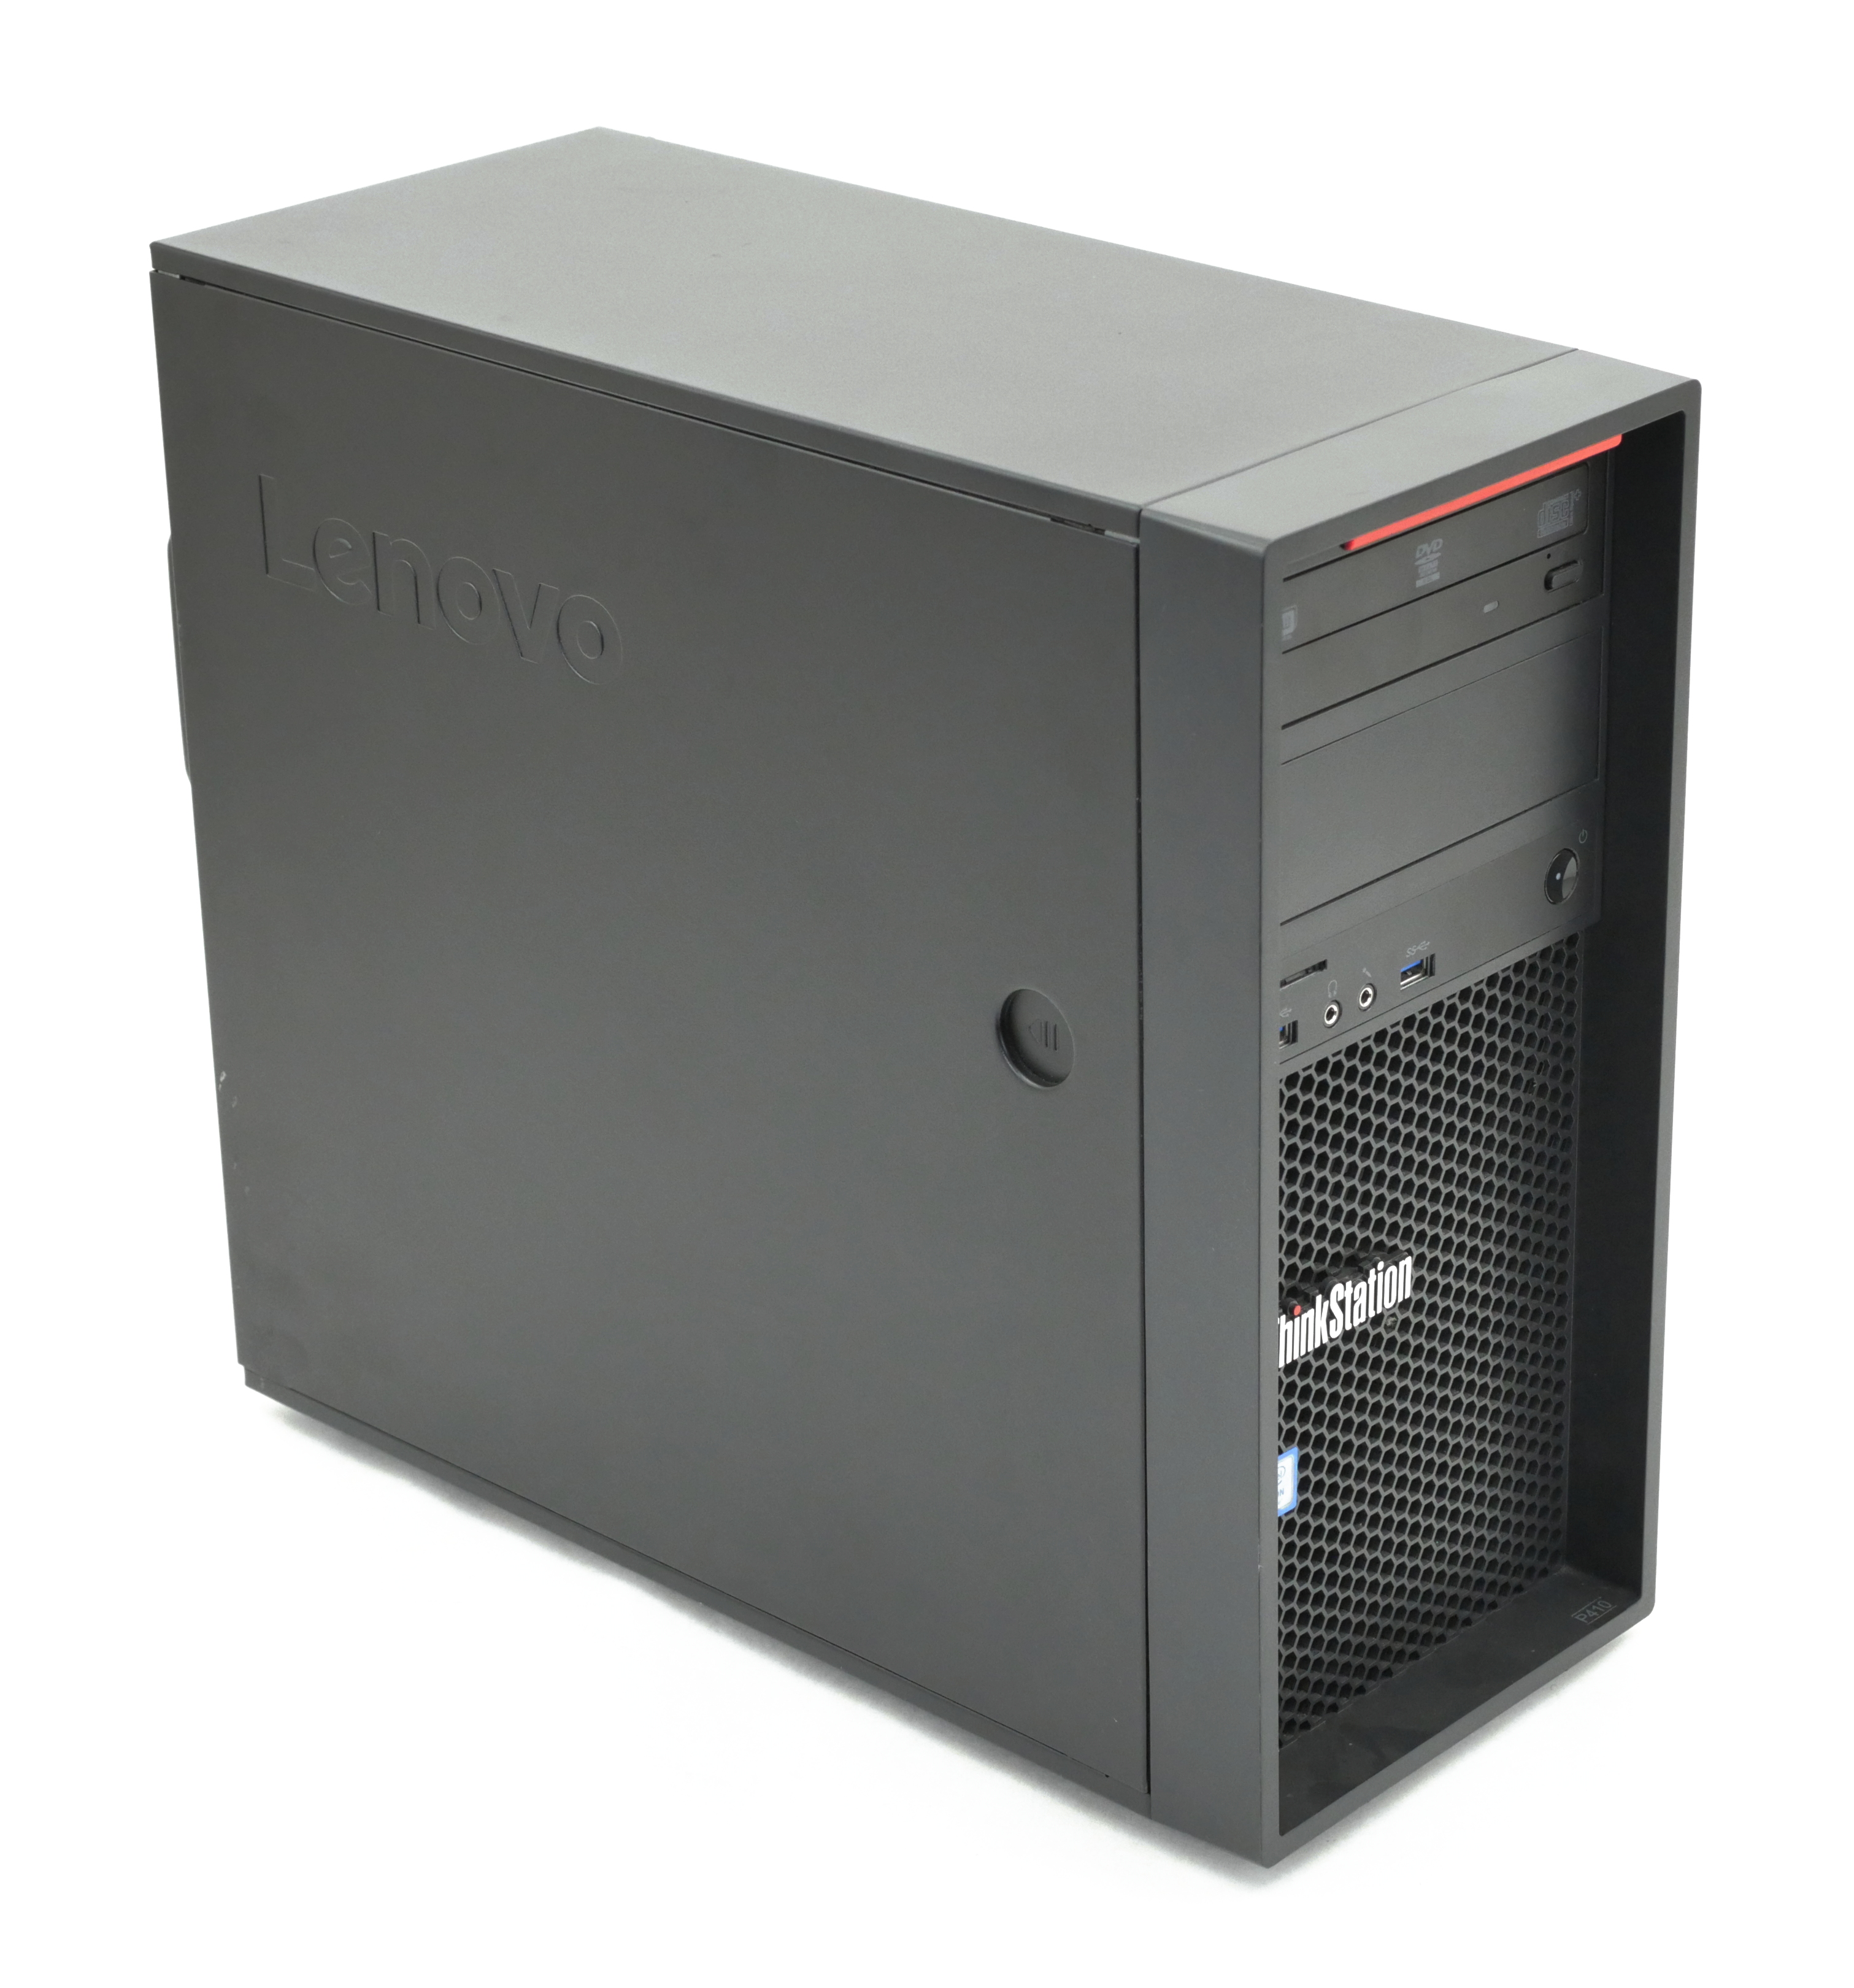 Lenovo ThinkStation P410 Tower Xeon E5-1650 RAM 16GB SSD 256GB Quadro P400